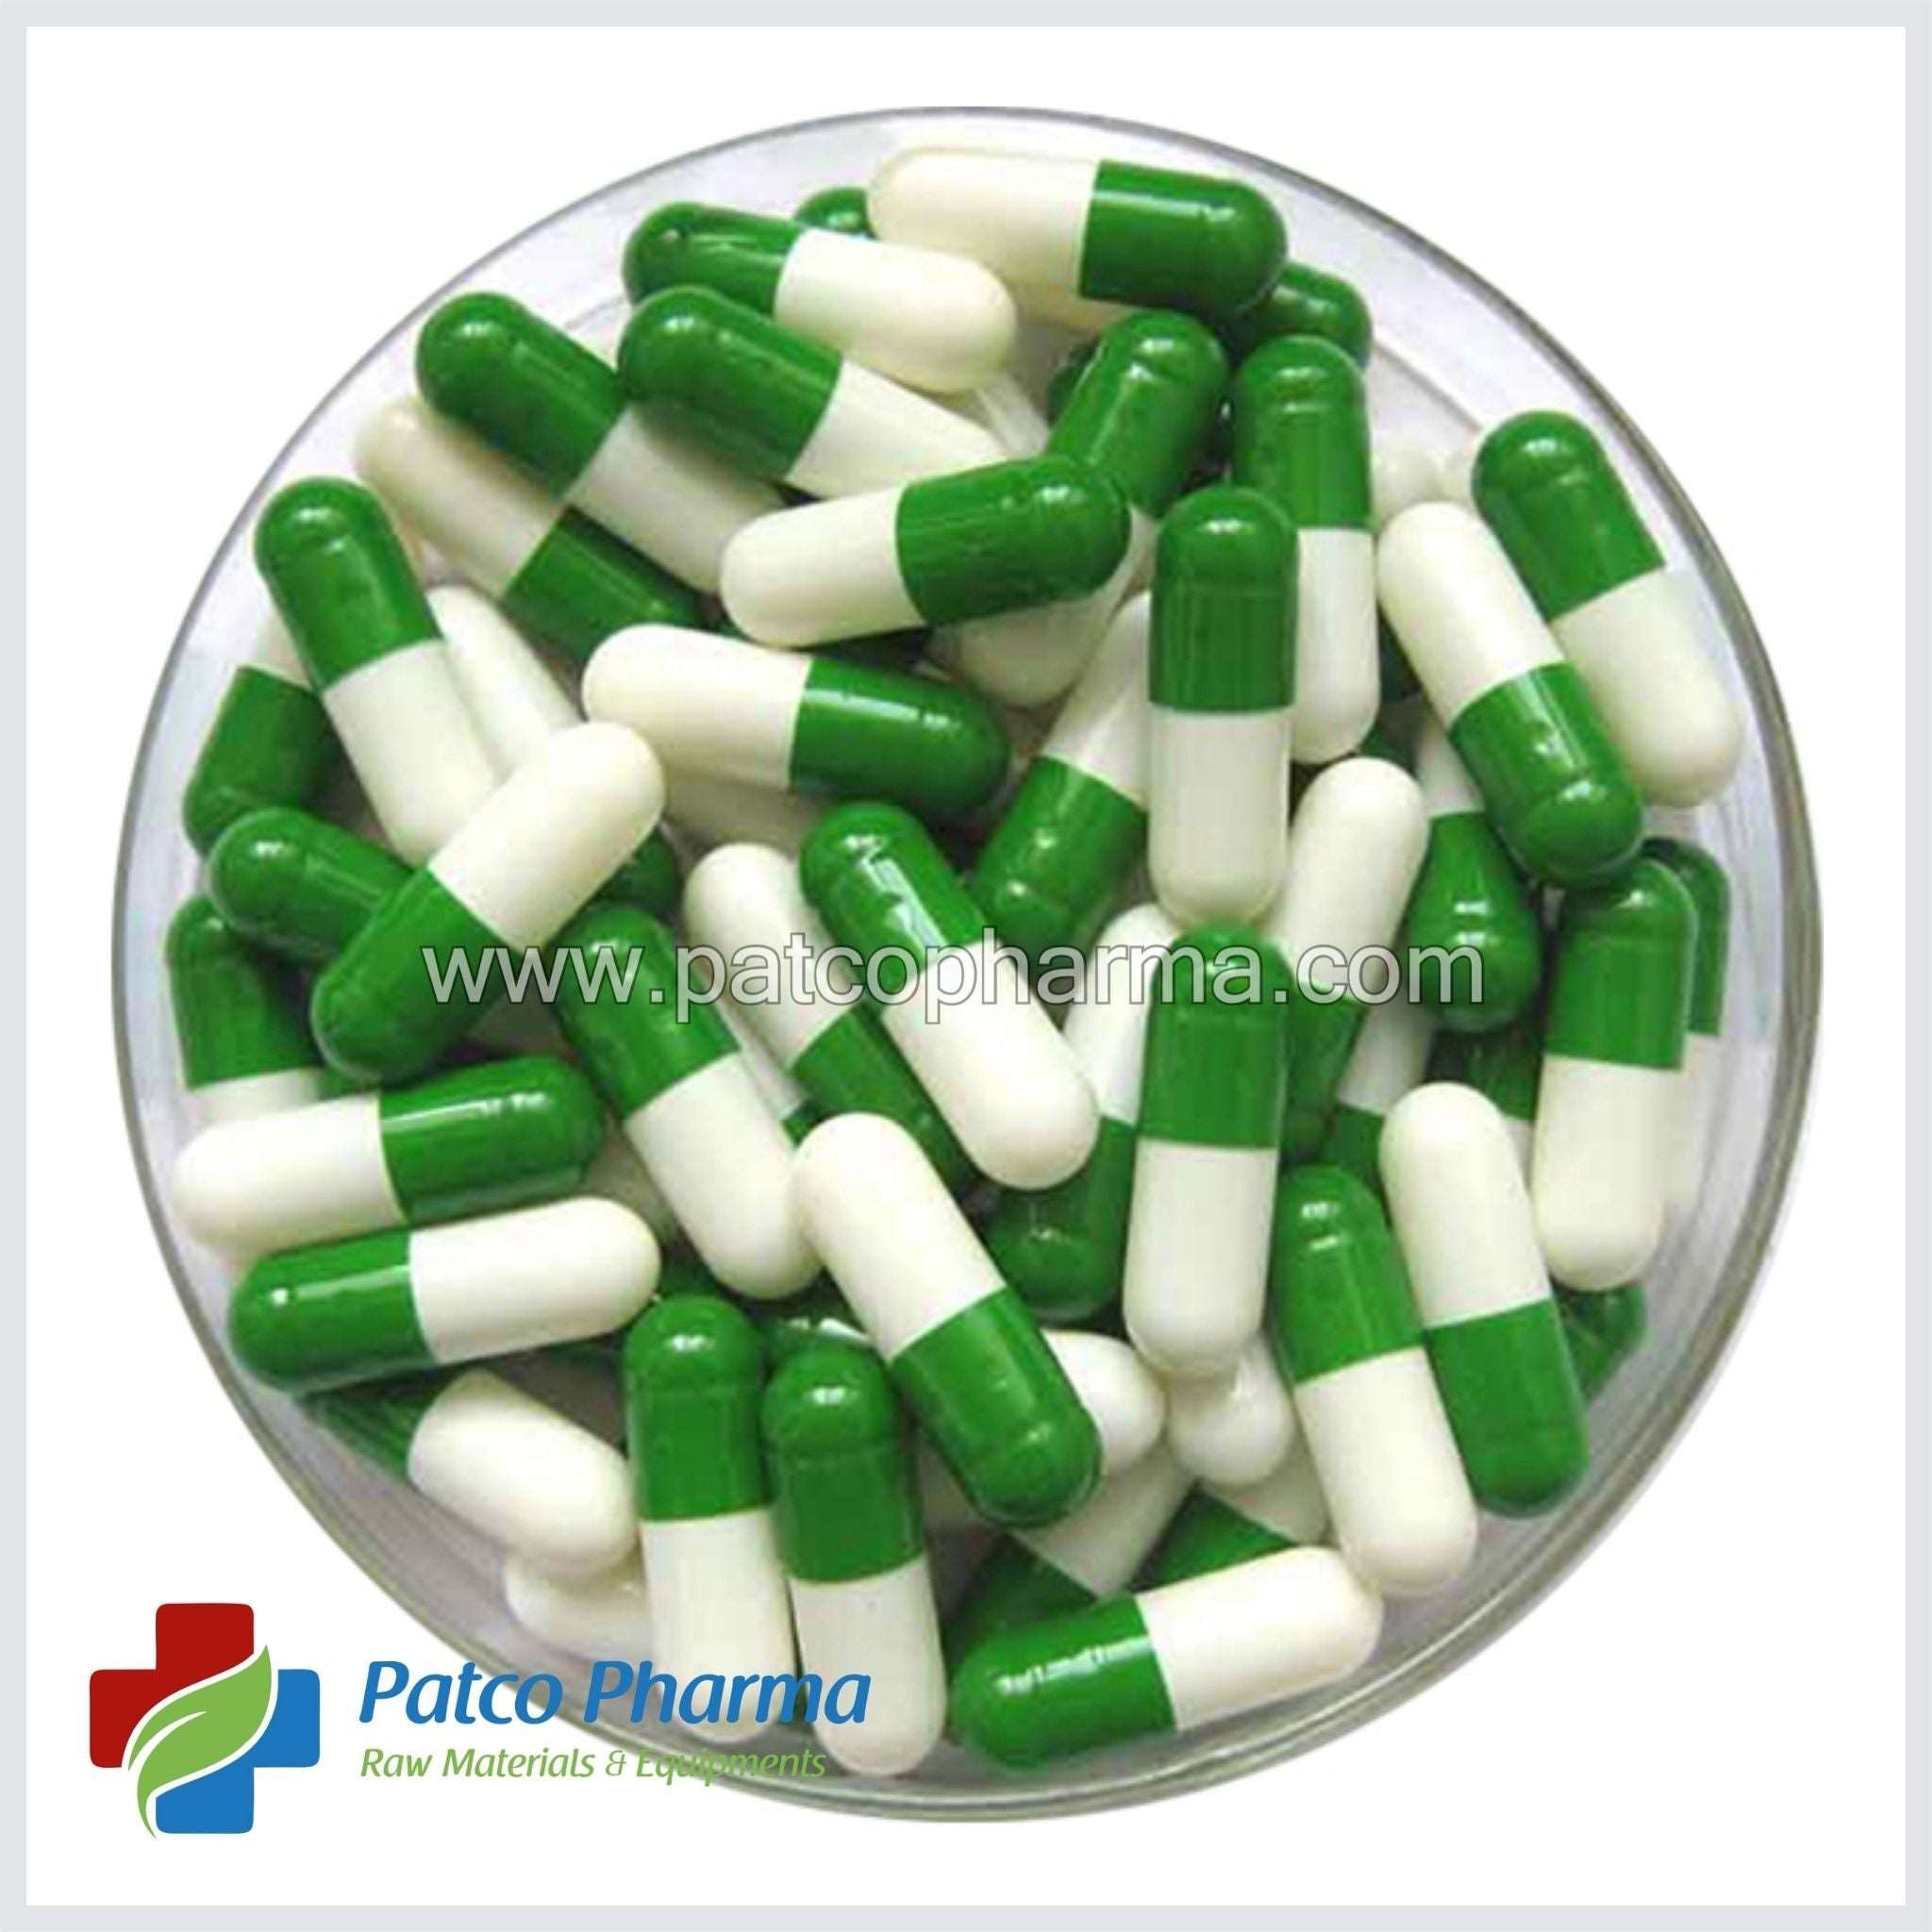 Empty Gelatin Capsule - Size 0, Patco Pharma, Gelatin Capsule, empty-gelatin-capsule-size-6, 500 mg capsule, Gelatin Capsule, Size 0 Capsue, size 0 capsule, Patco Pharma